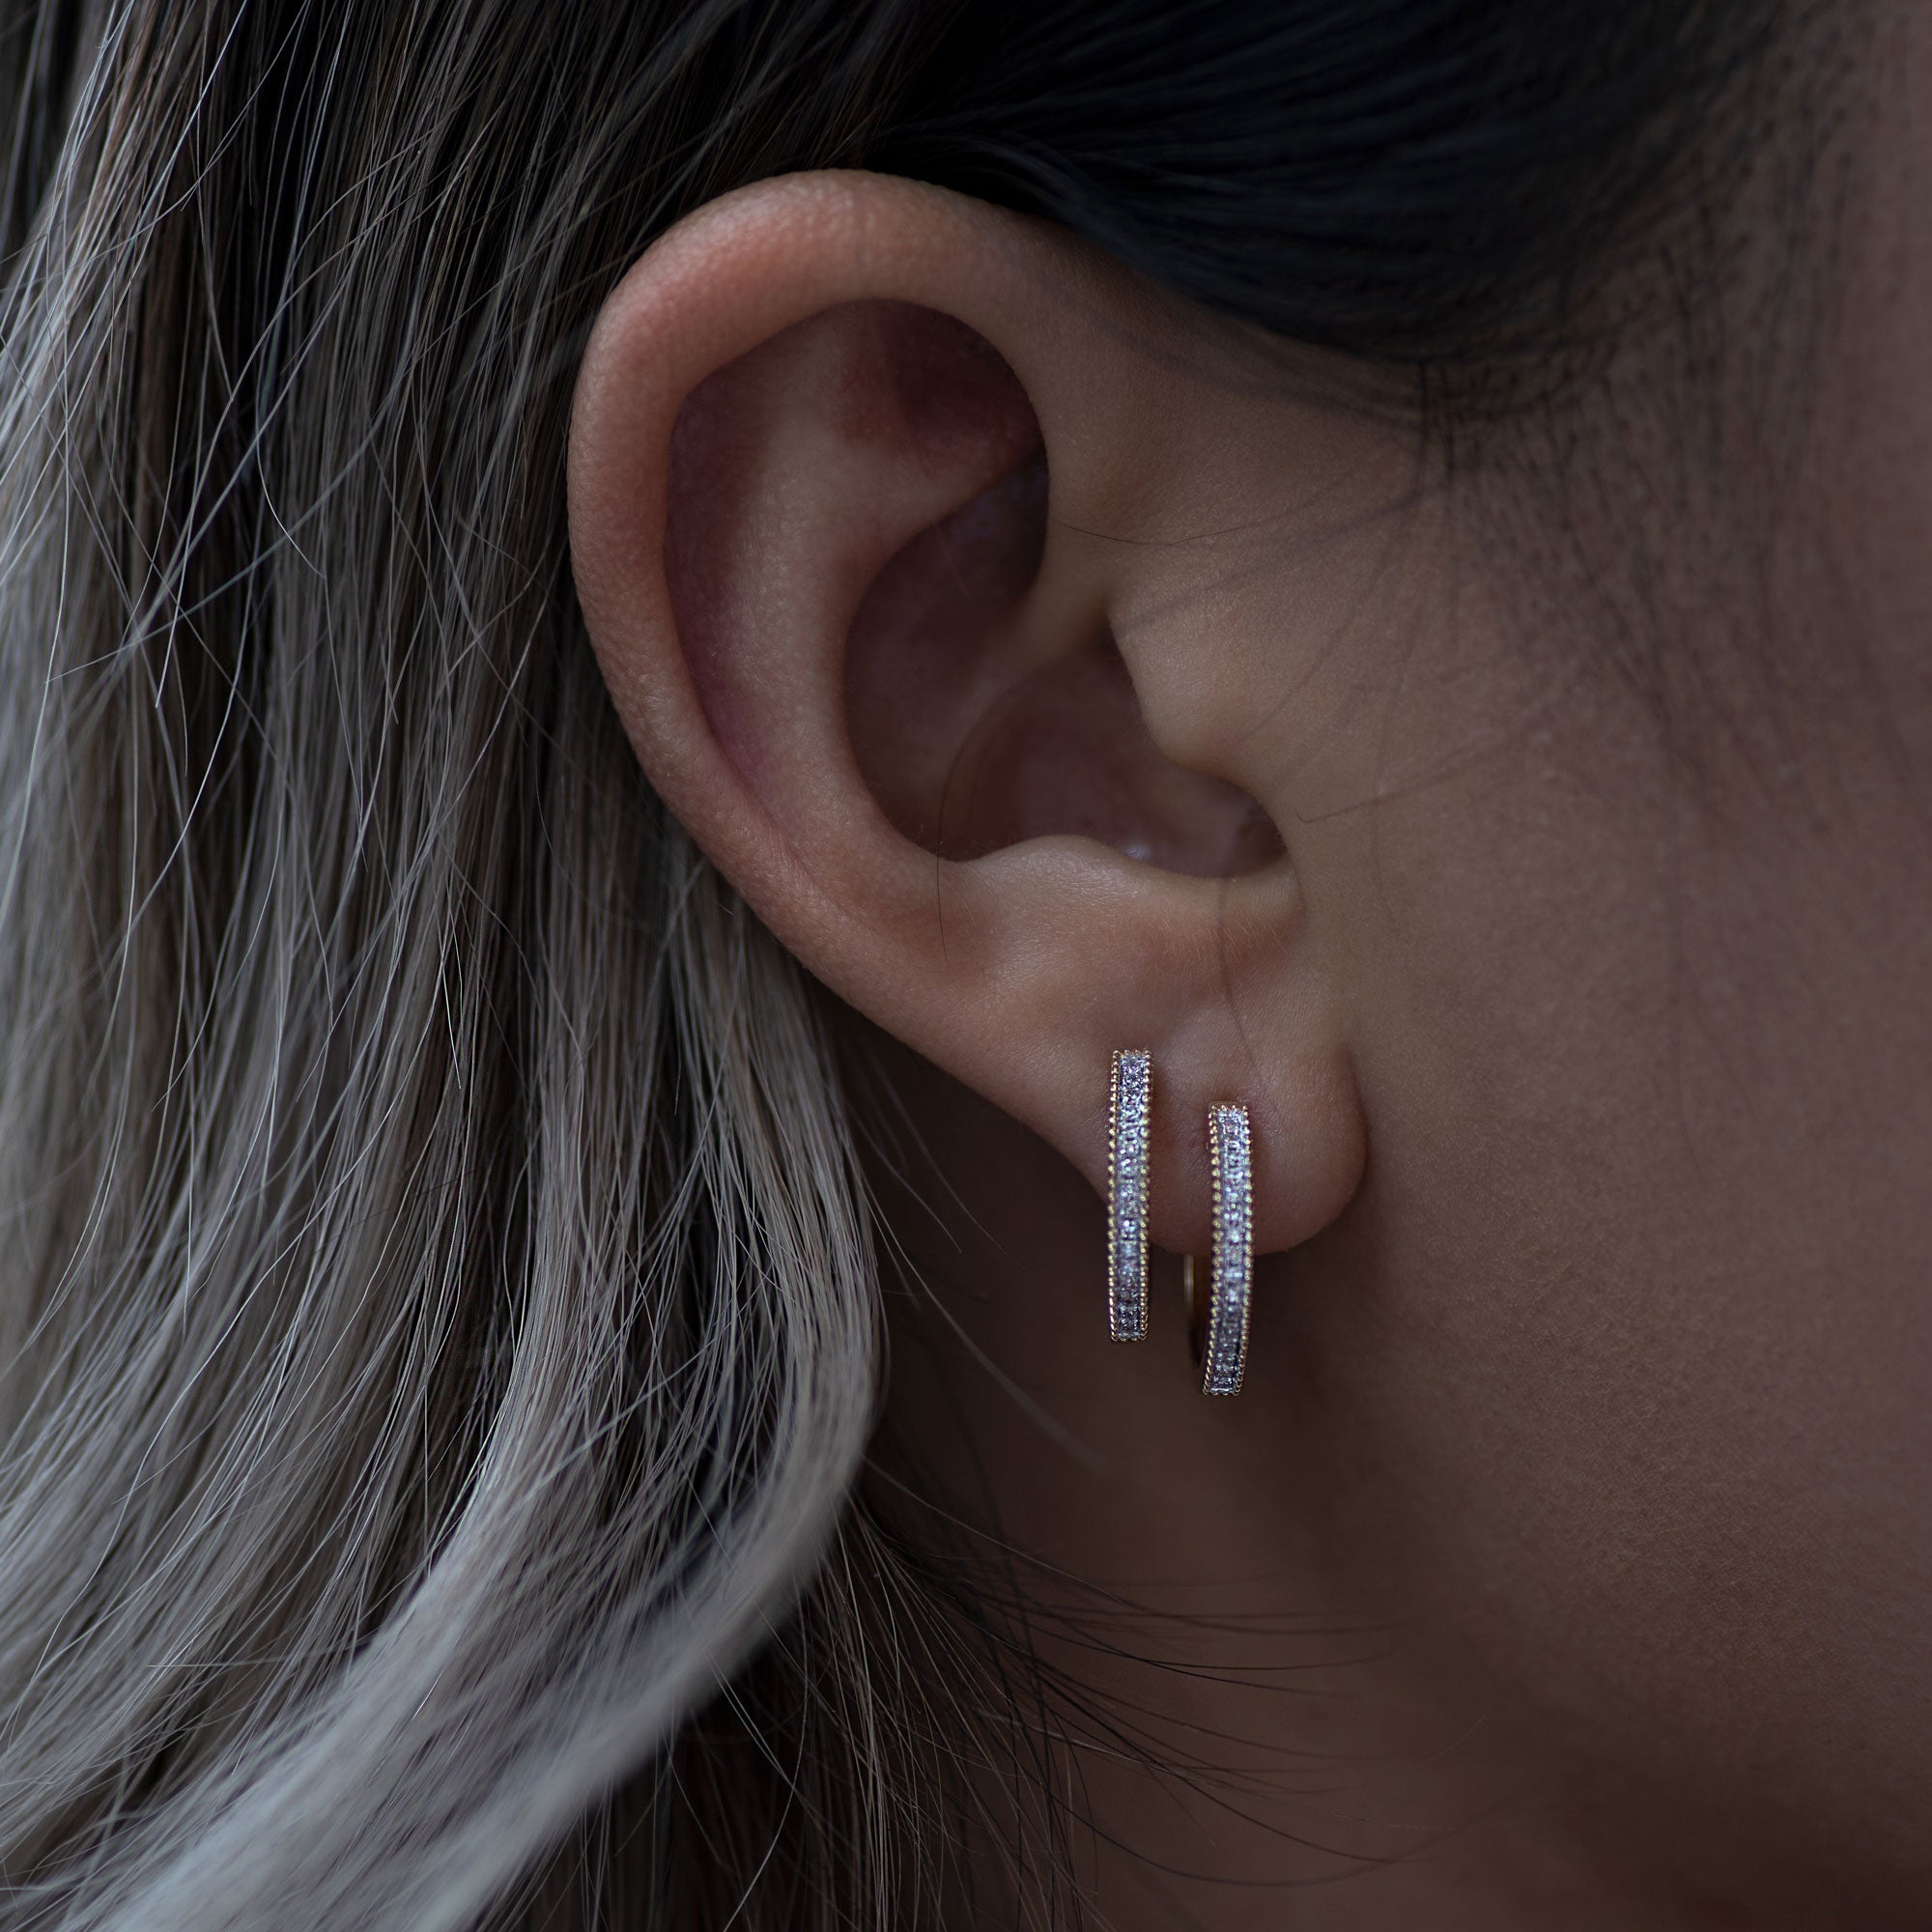 14K Solid Gold Diamond Medium Hoop Earrings - Anygolds